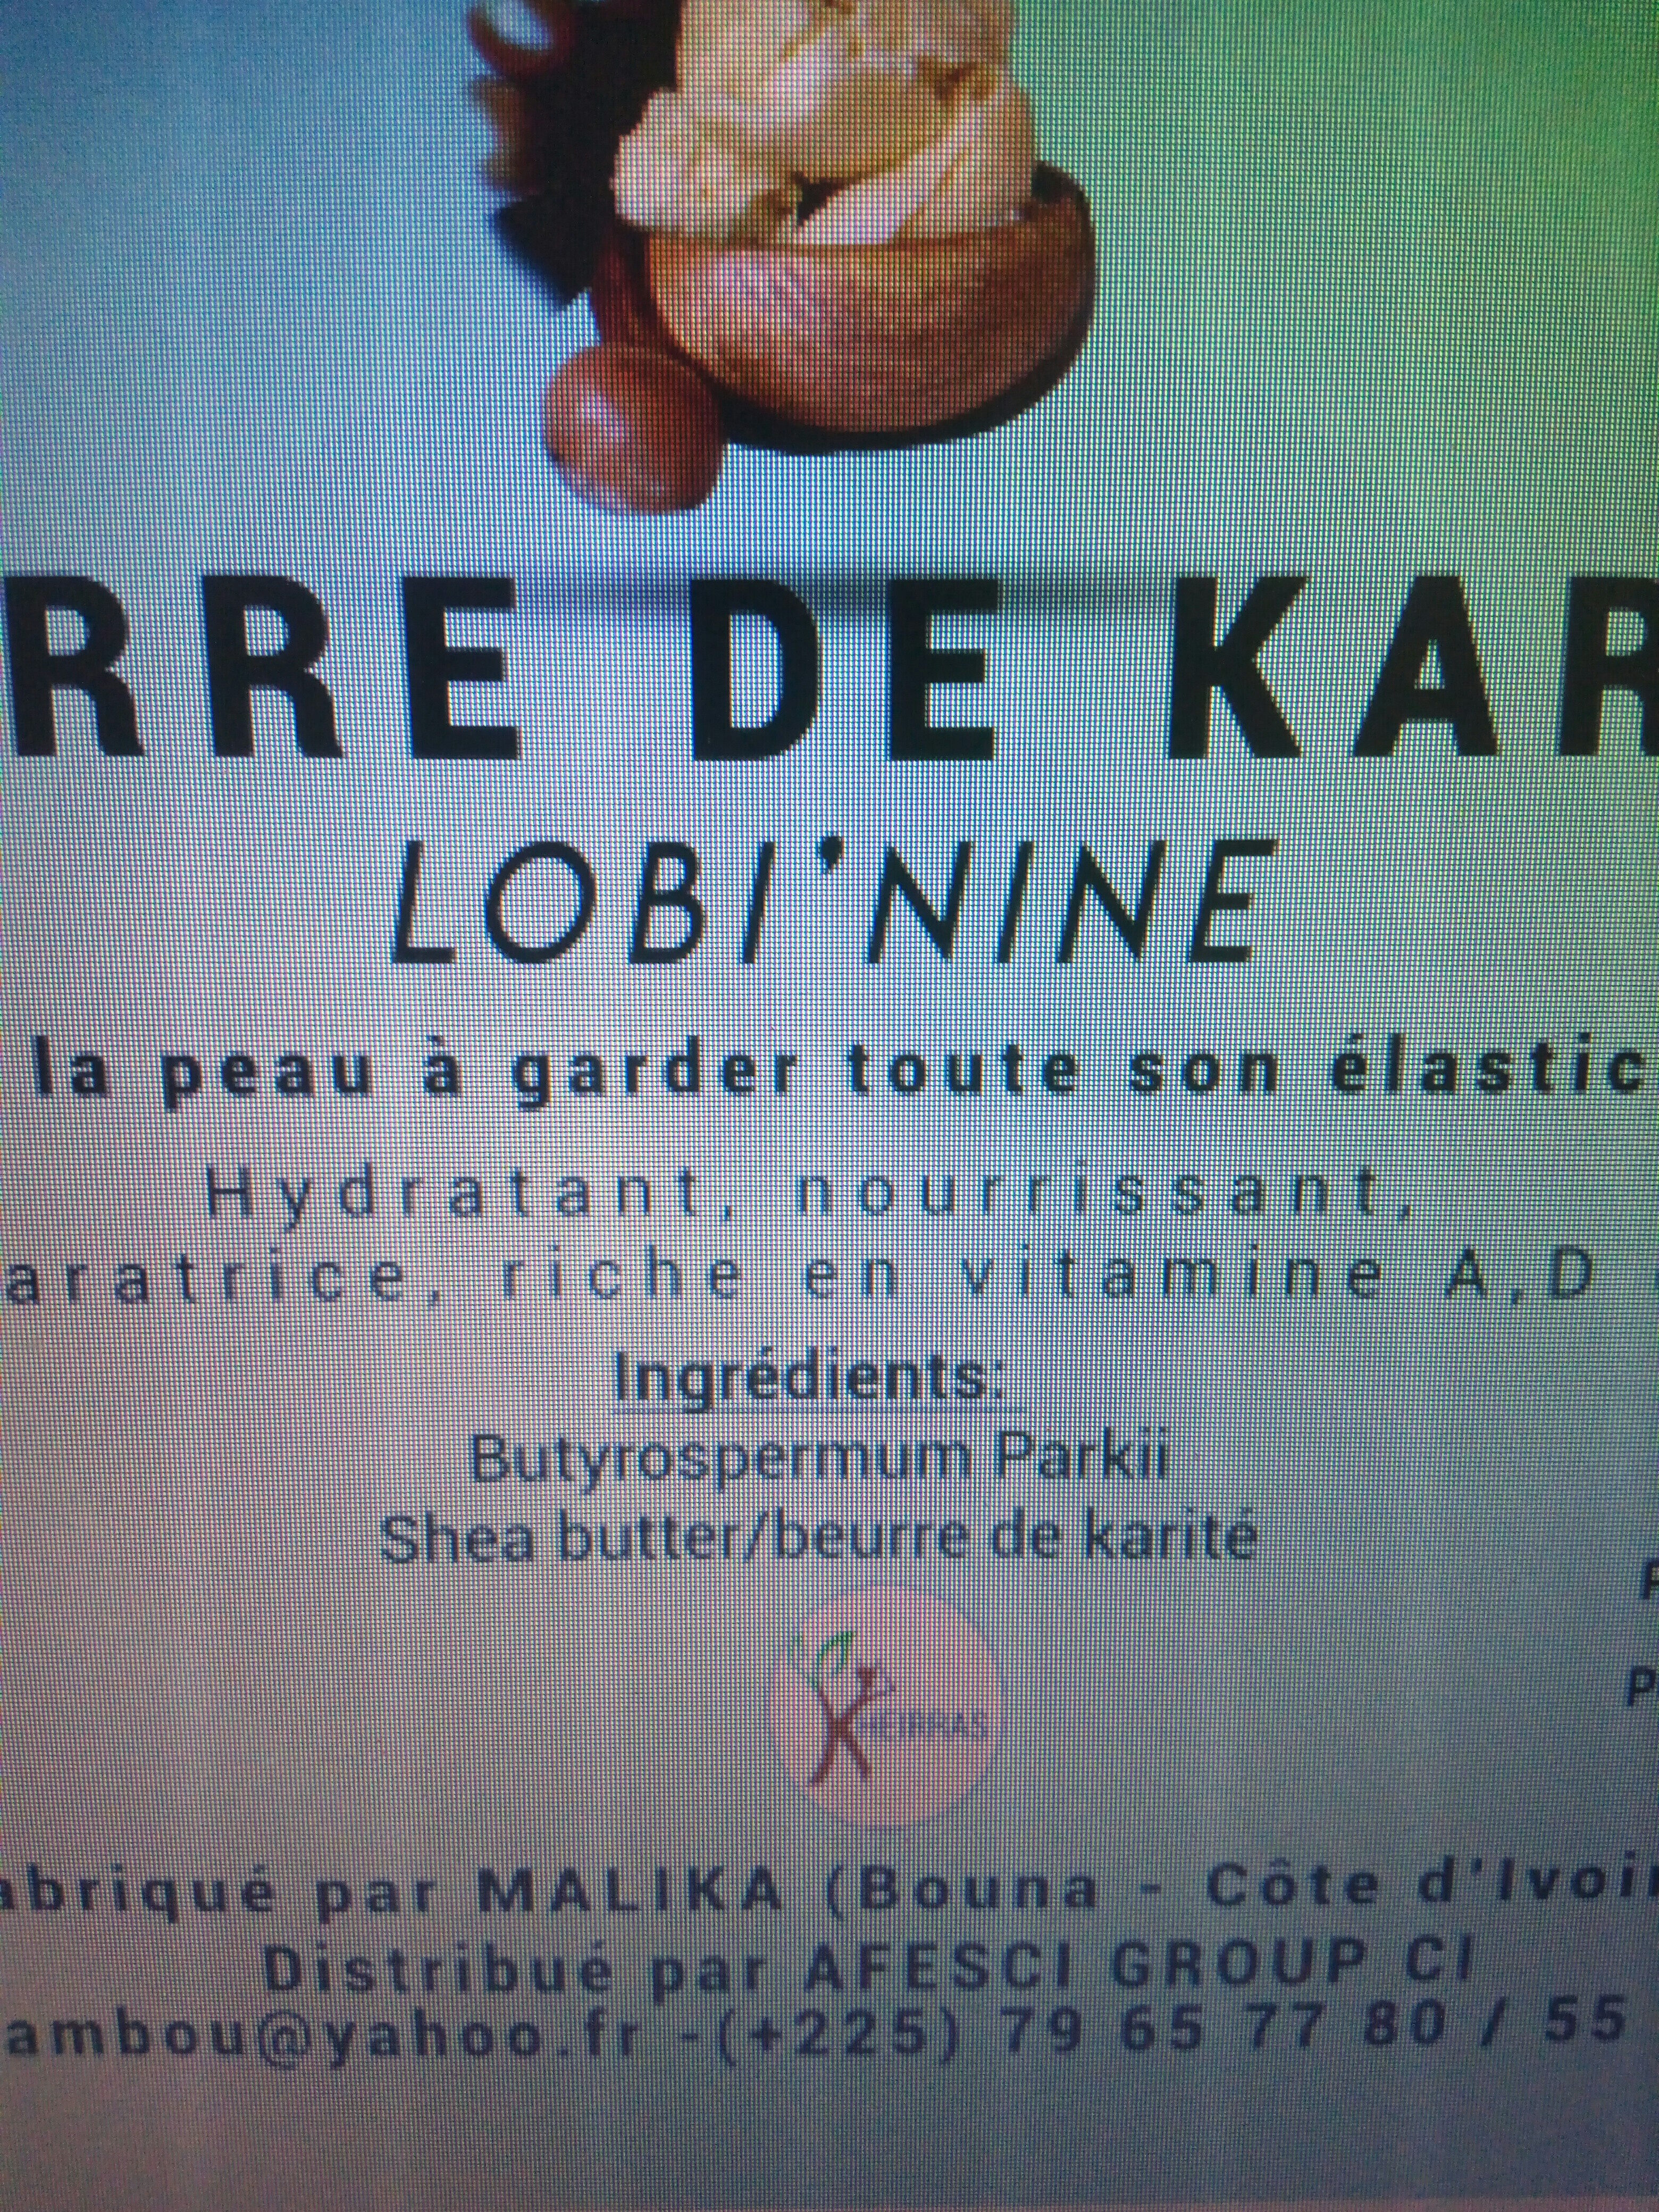 Beurre de karité - Ingredients - fr